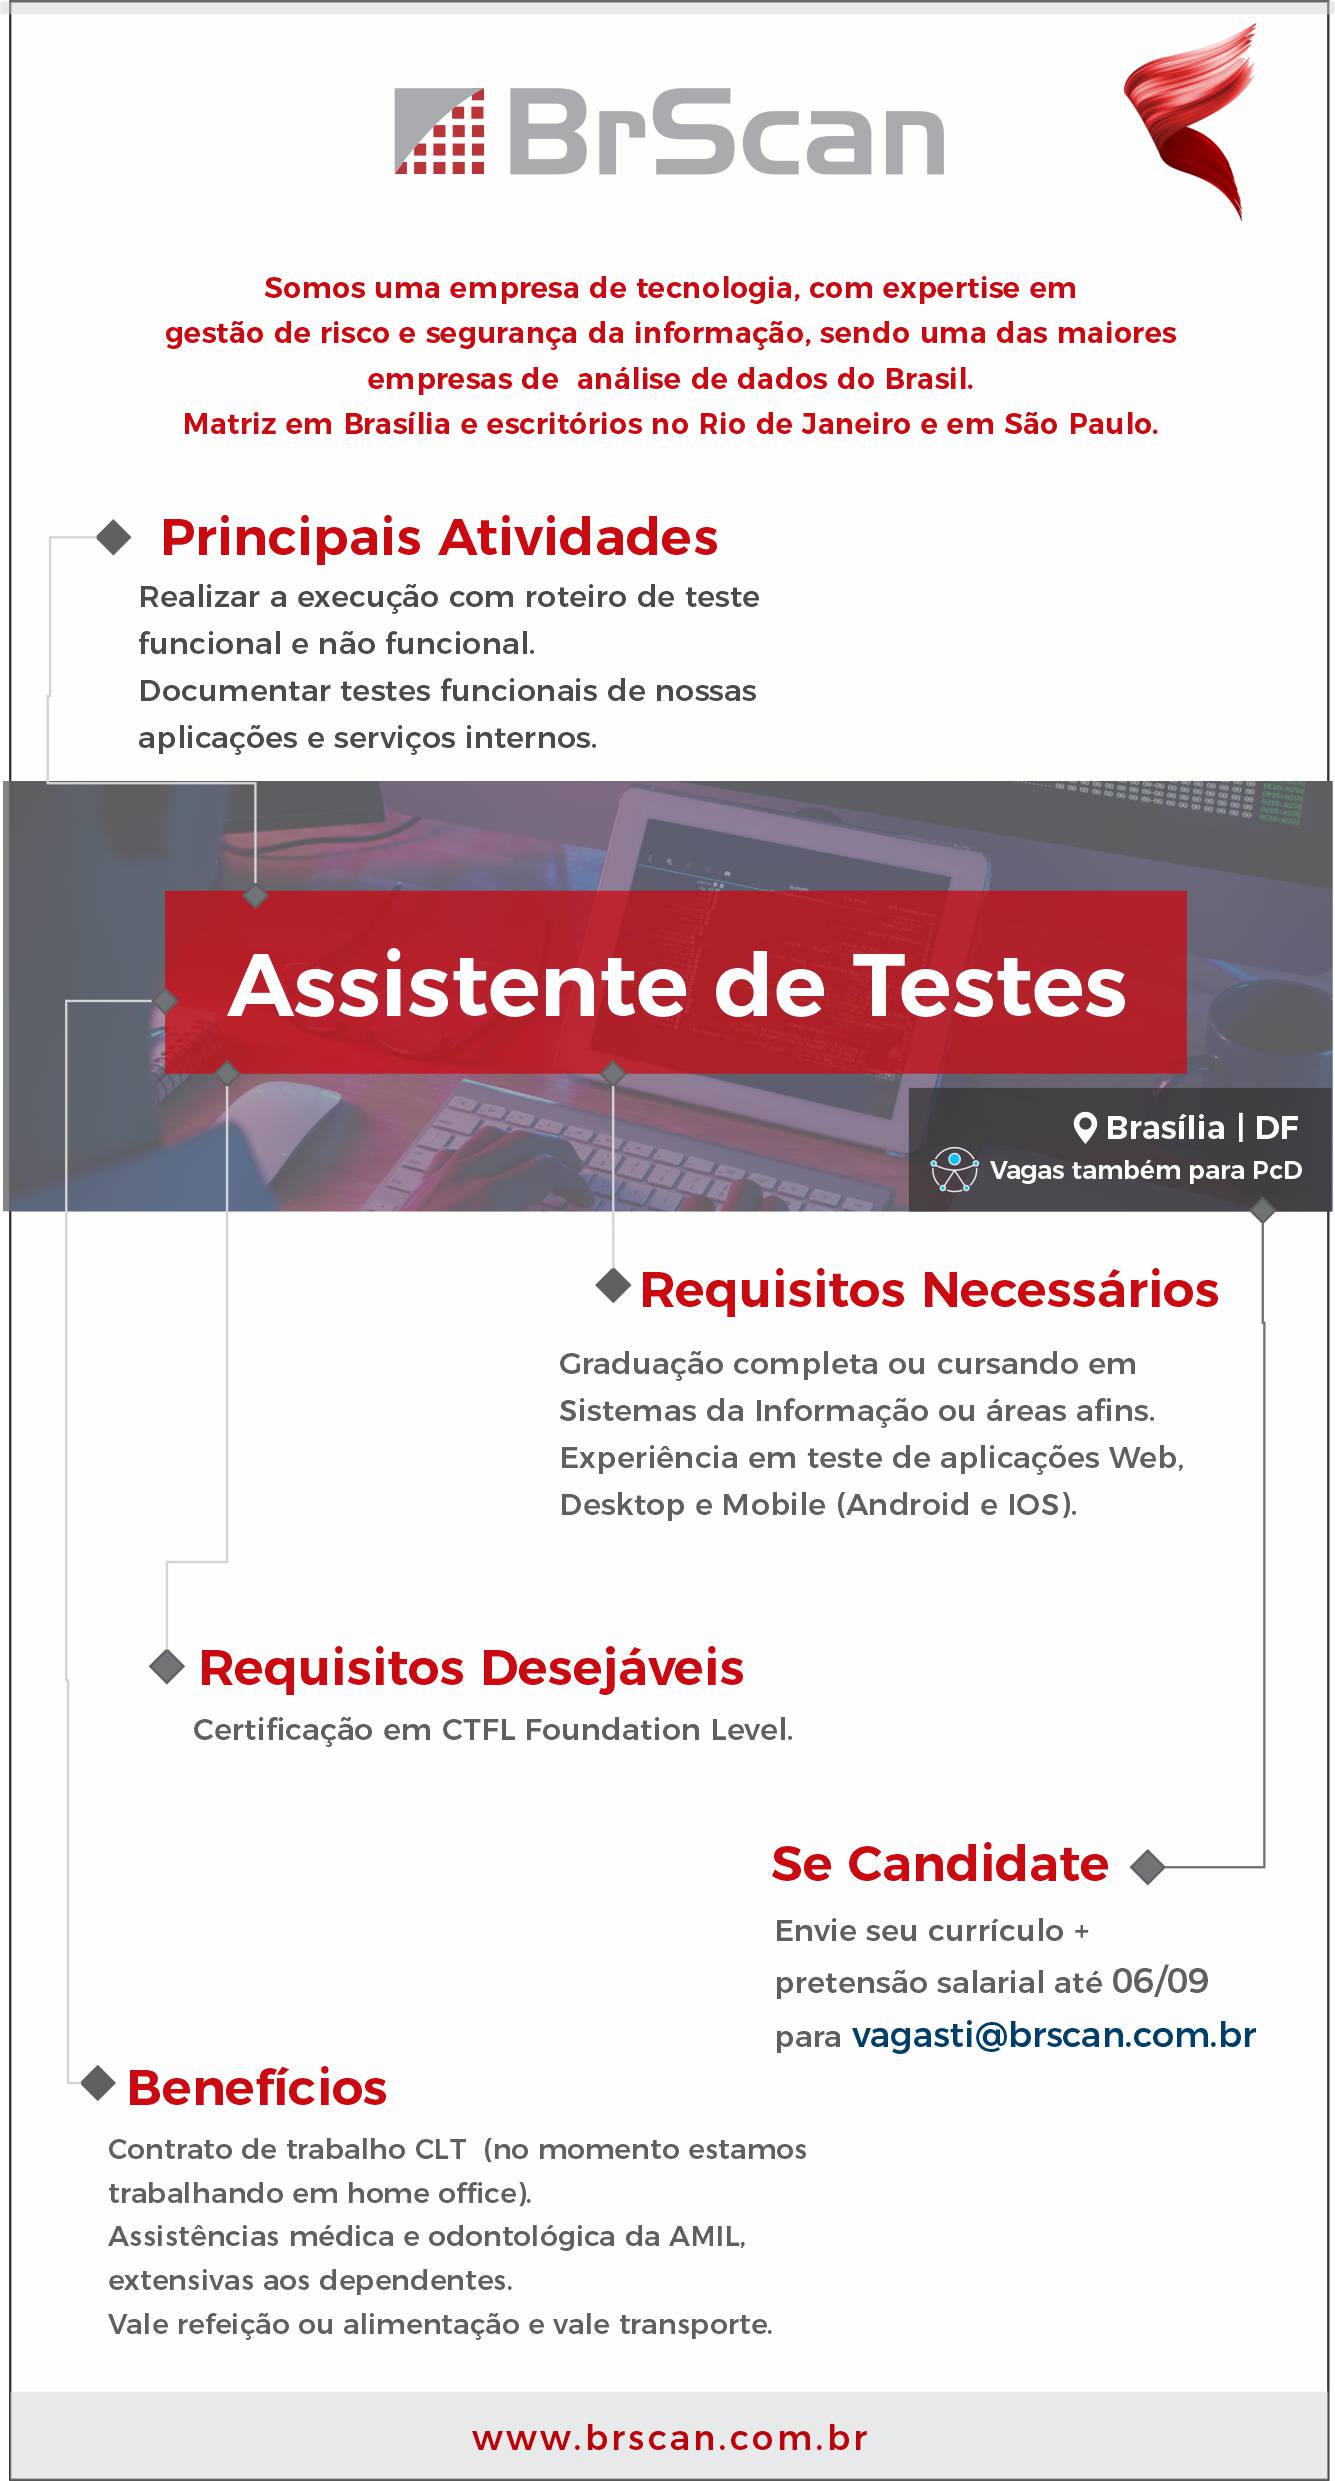 [BrScan] – Oportunidade para Assistente de Testes